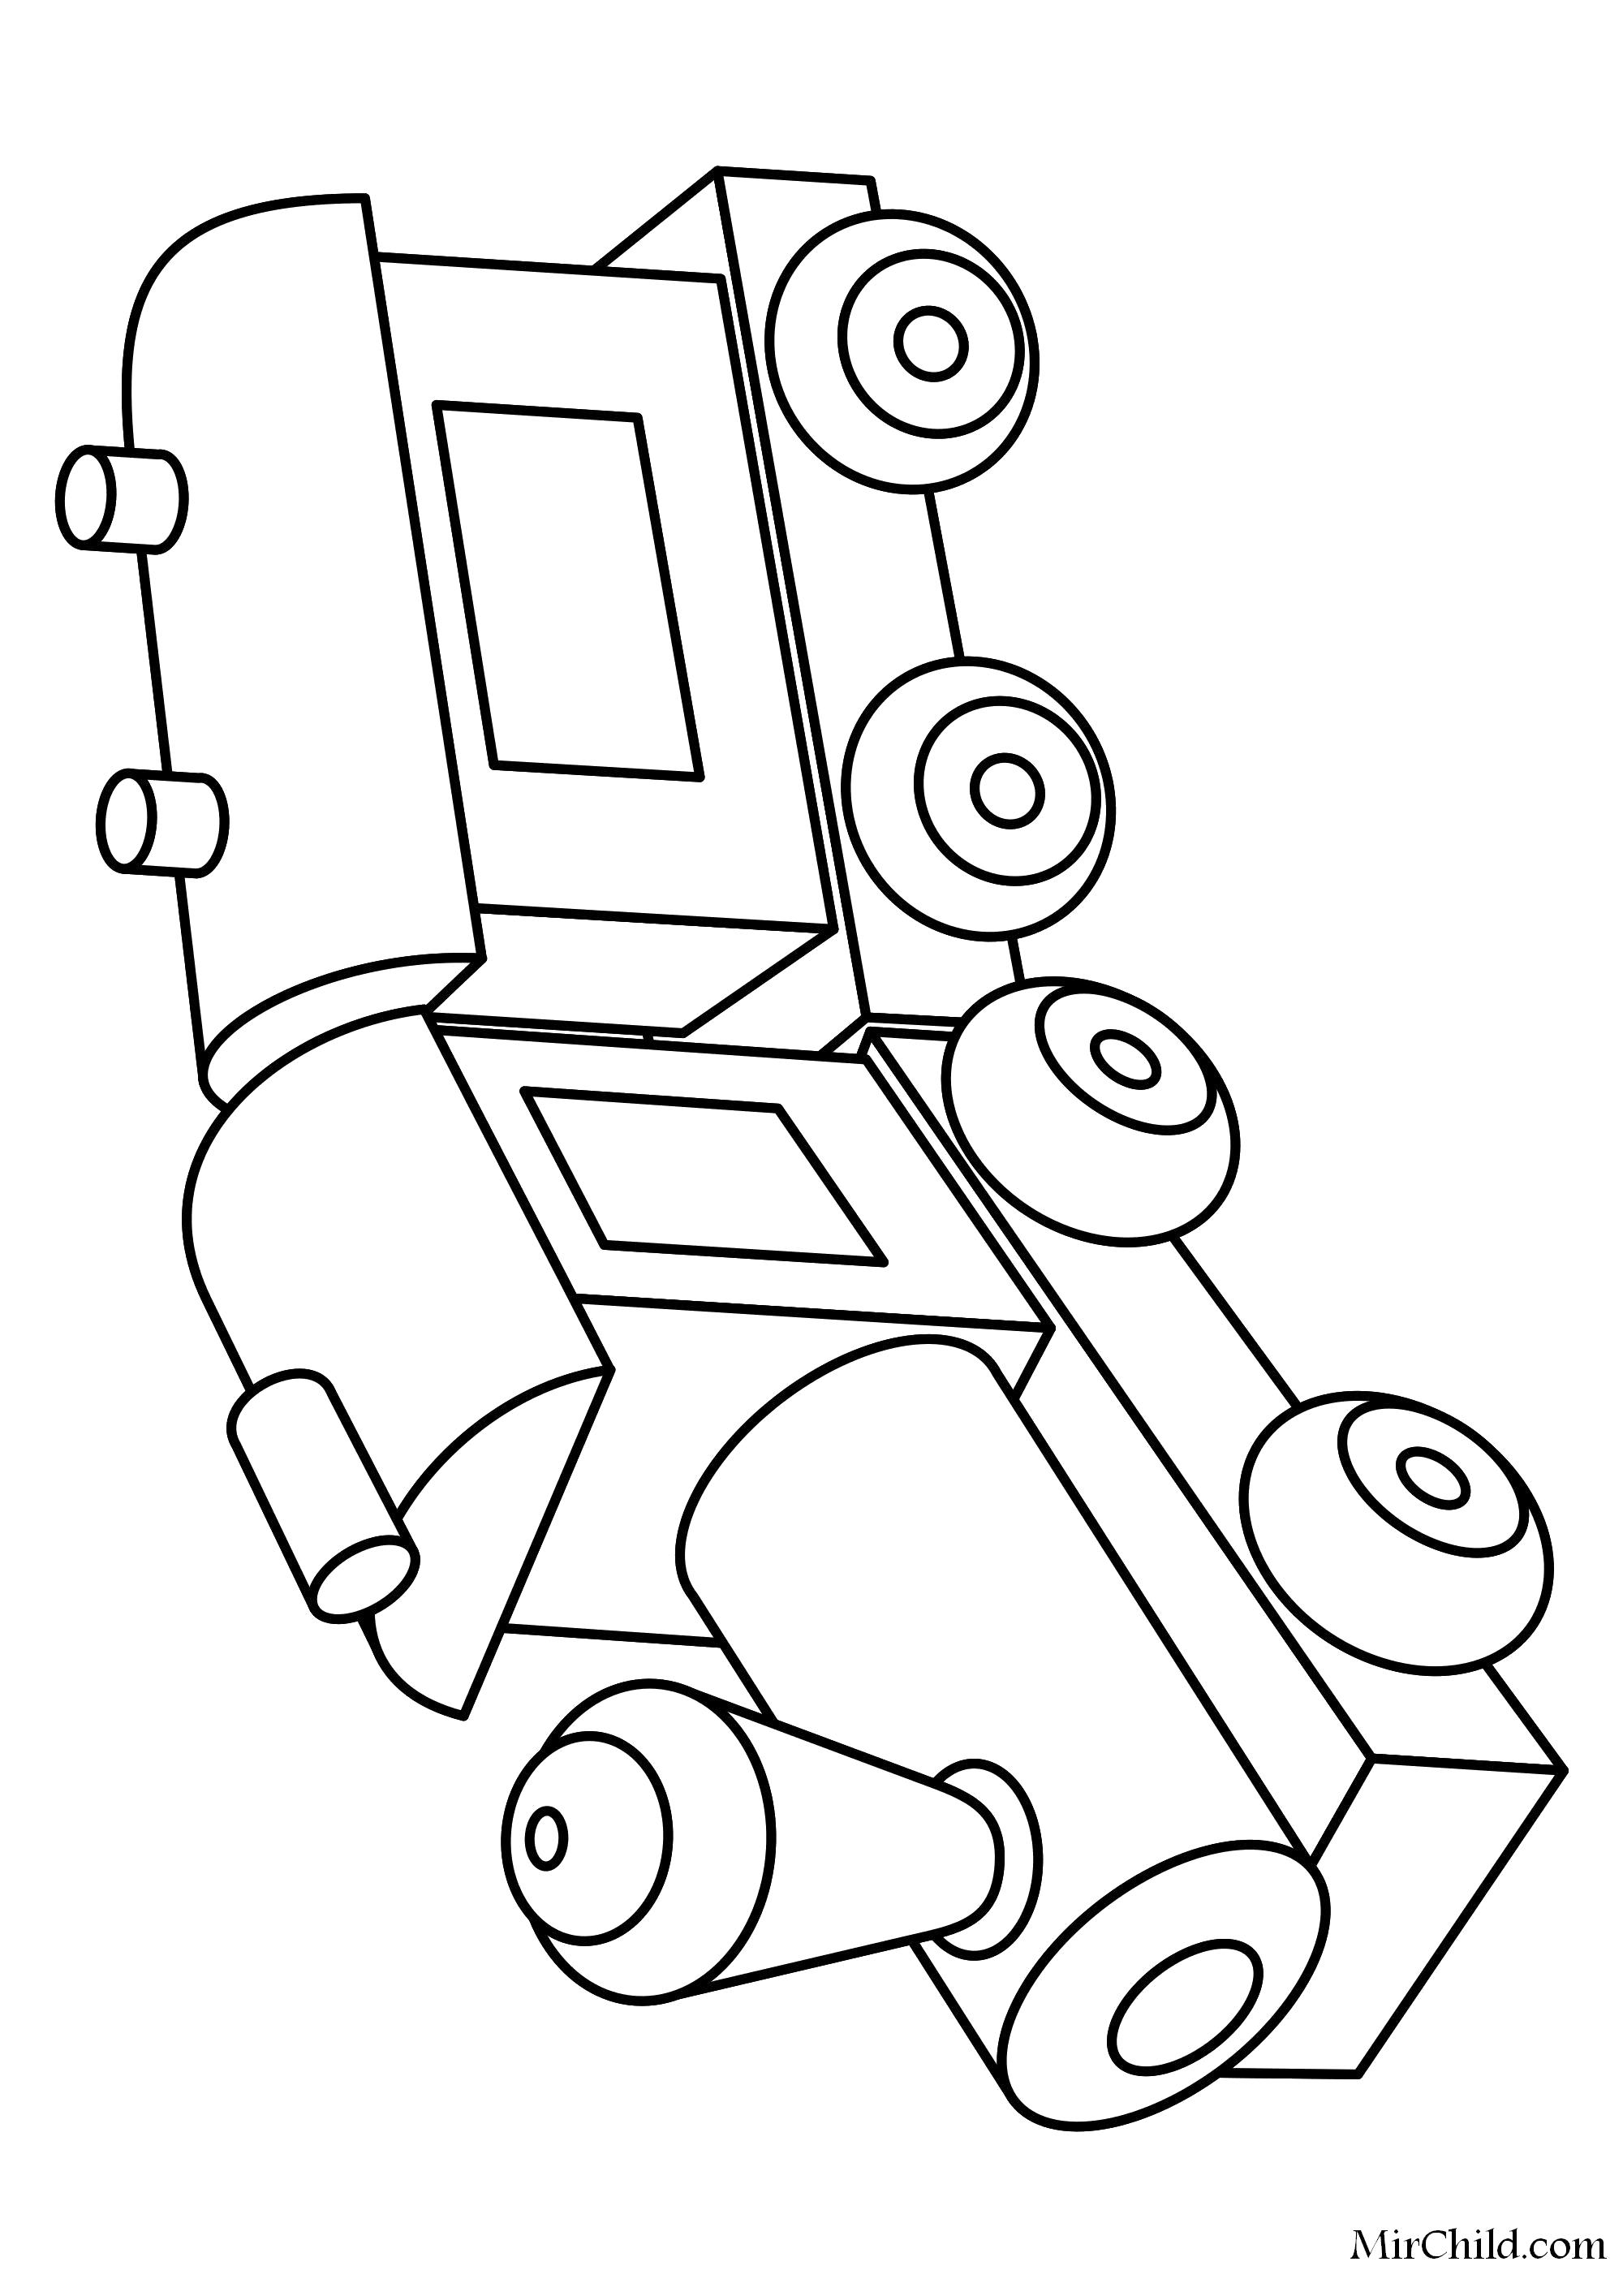 Раскраска  Игрушка паровозик с вагоном. Скачать паровозик.  Распечатать паровозик